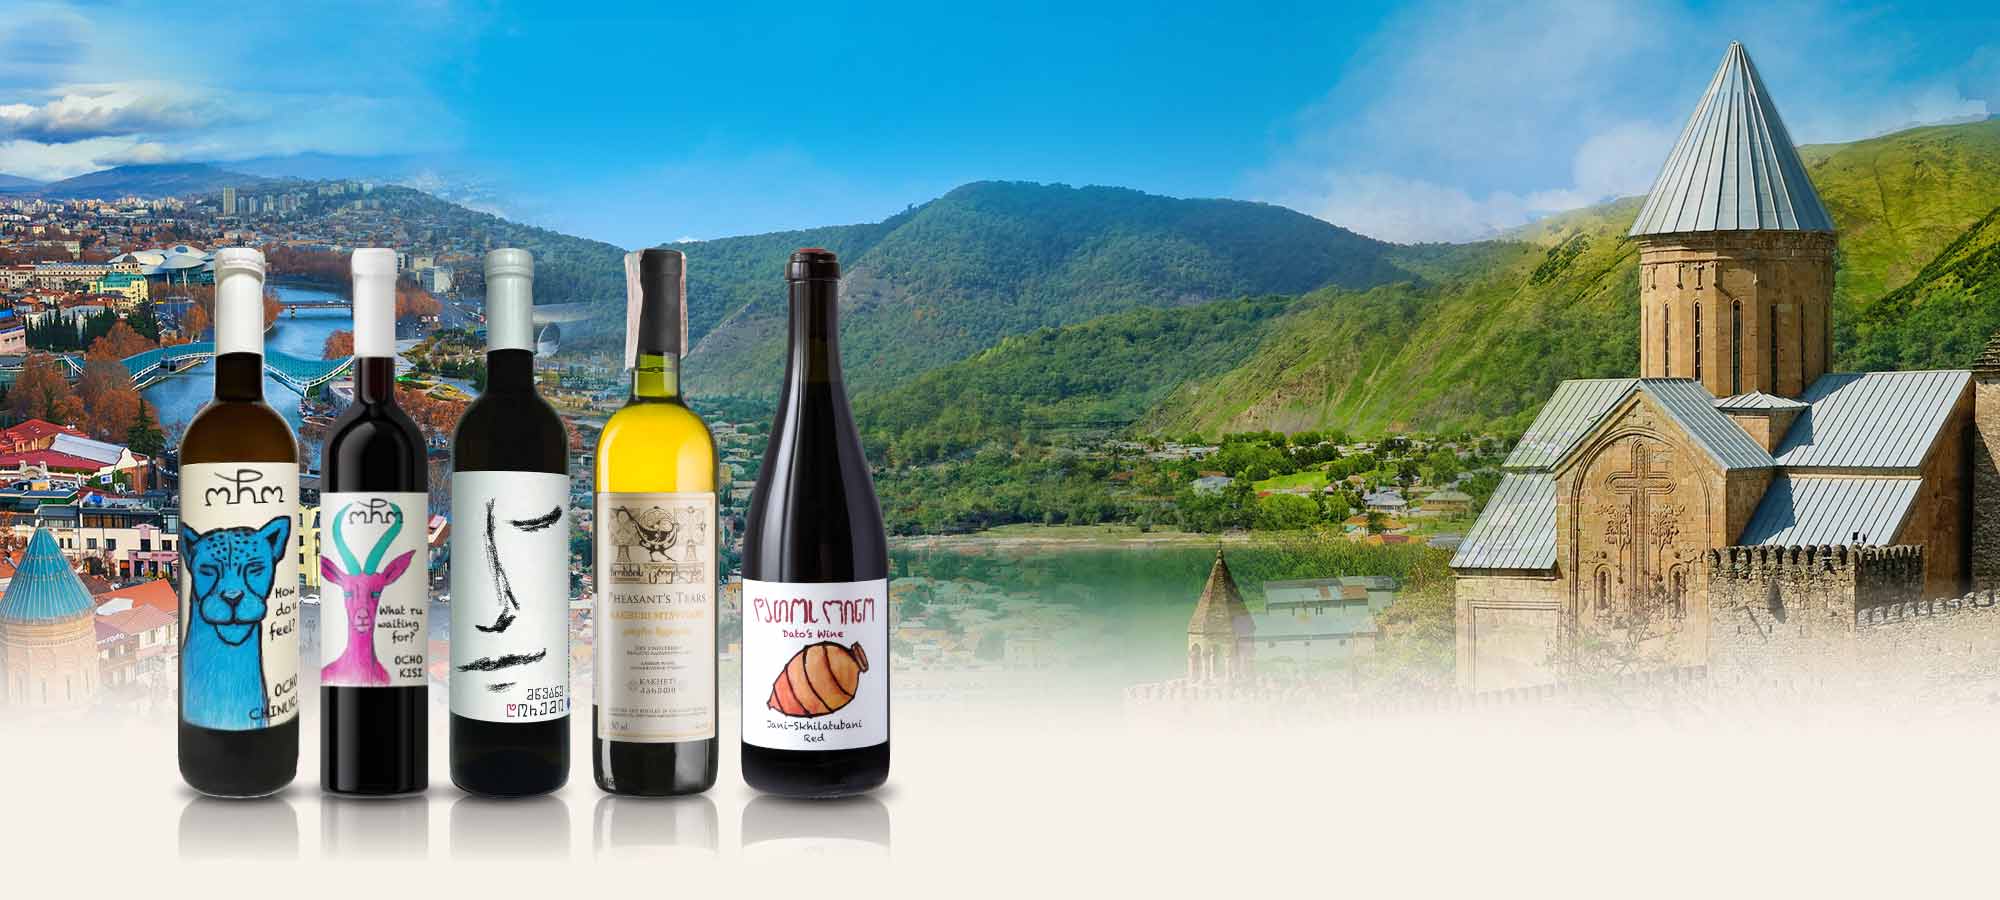 世上最古老的葡萄酒產區喬治亞Georgia | 陶甕橘酒、稀有原生品種紅白酒